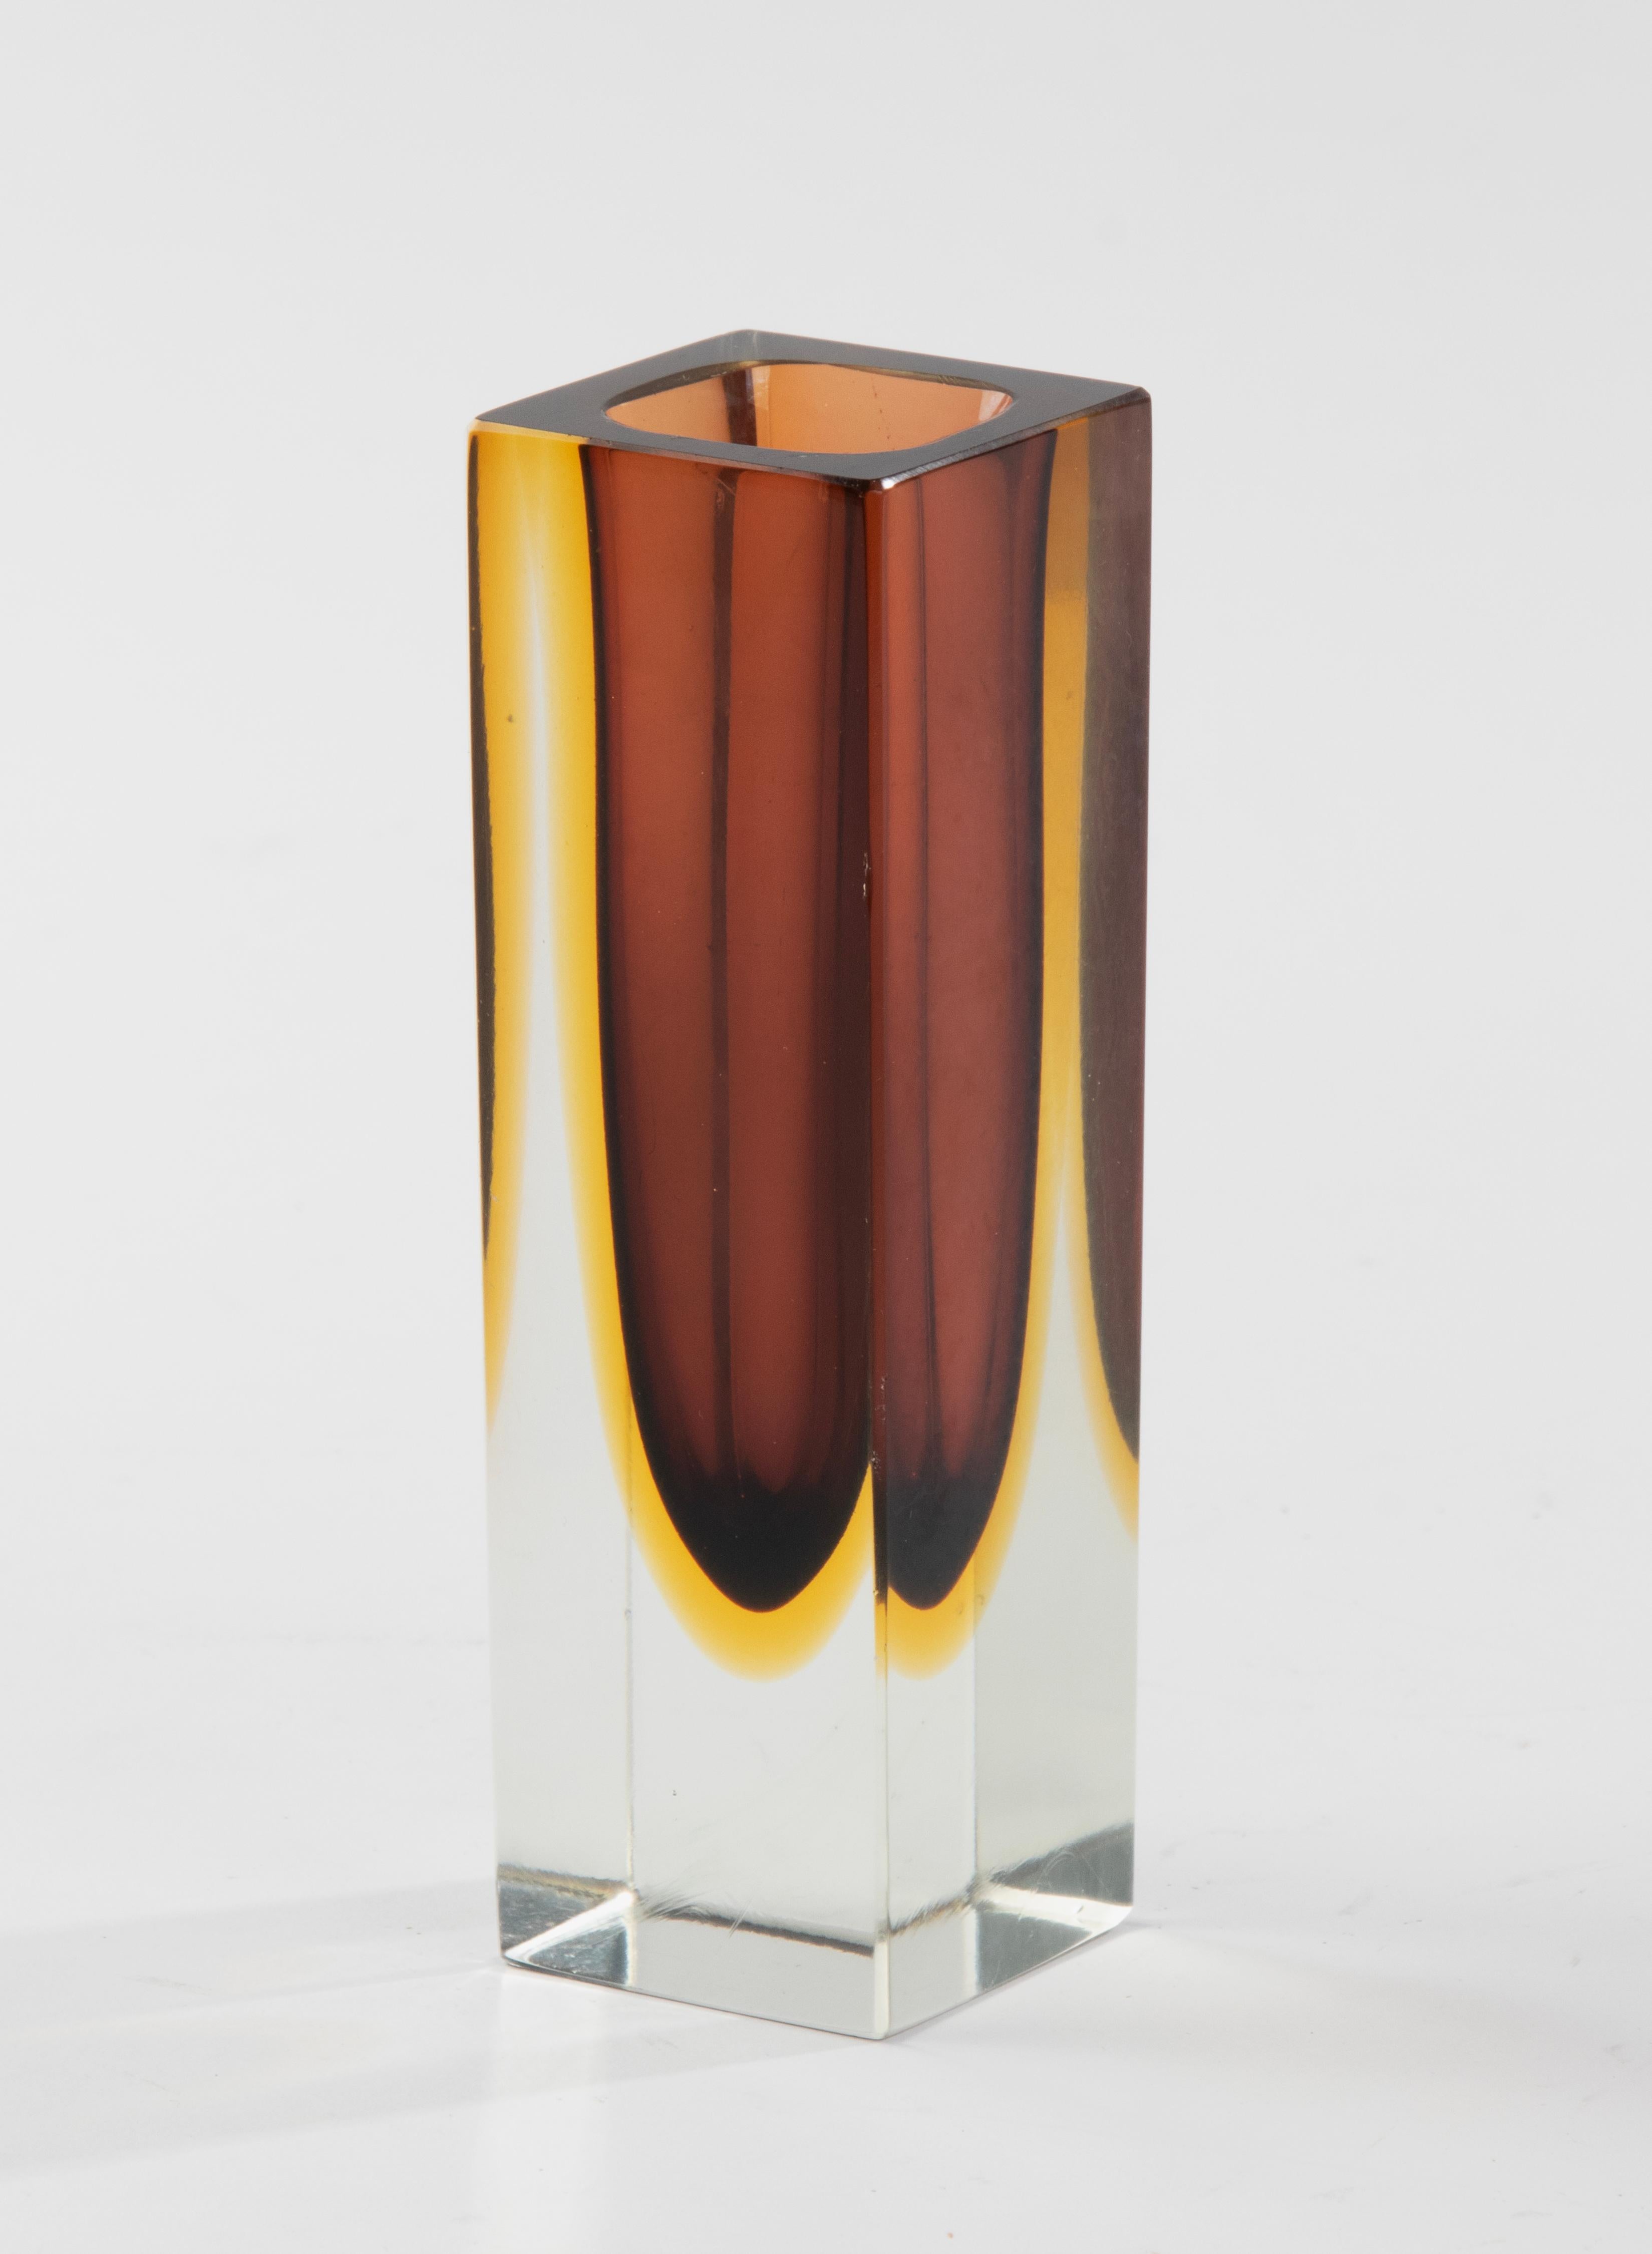 Eine schöne Sommerso-Vase aus Kunstglas, die dem italienischen Designer Flavio Poli zugeschrieben wird. 
Die Vase ist in gutem Zustand. Schöne Farben und Qualität. 

Abmessungen: 4,5 x 4,5 cm und 14,5 cm hoch. 
Kostenloser Versand weltweit